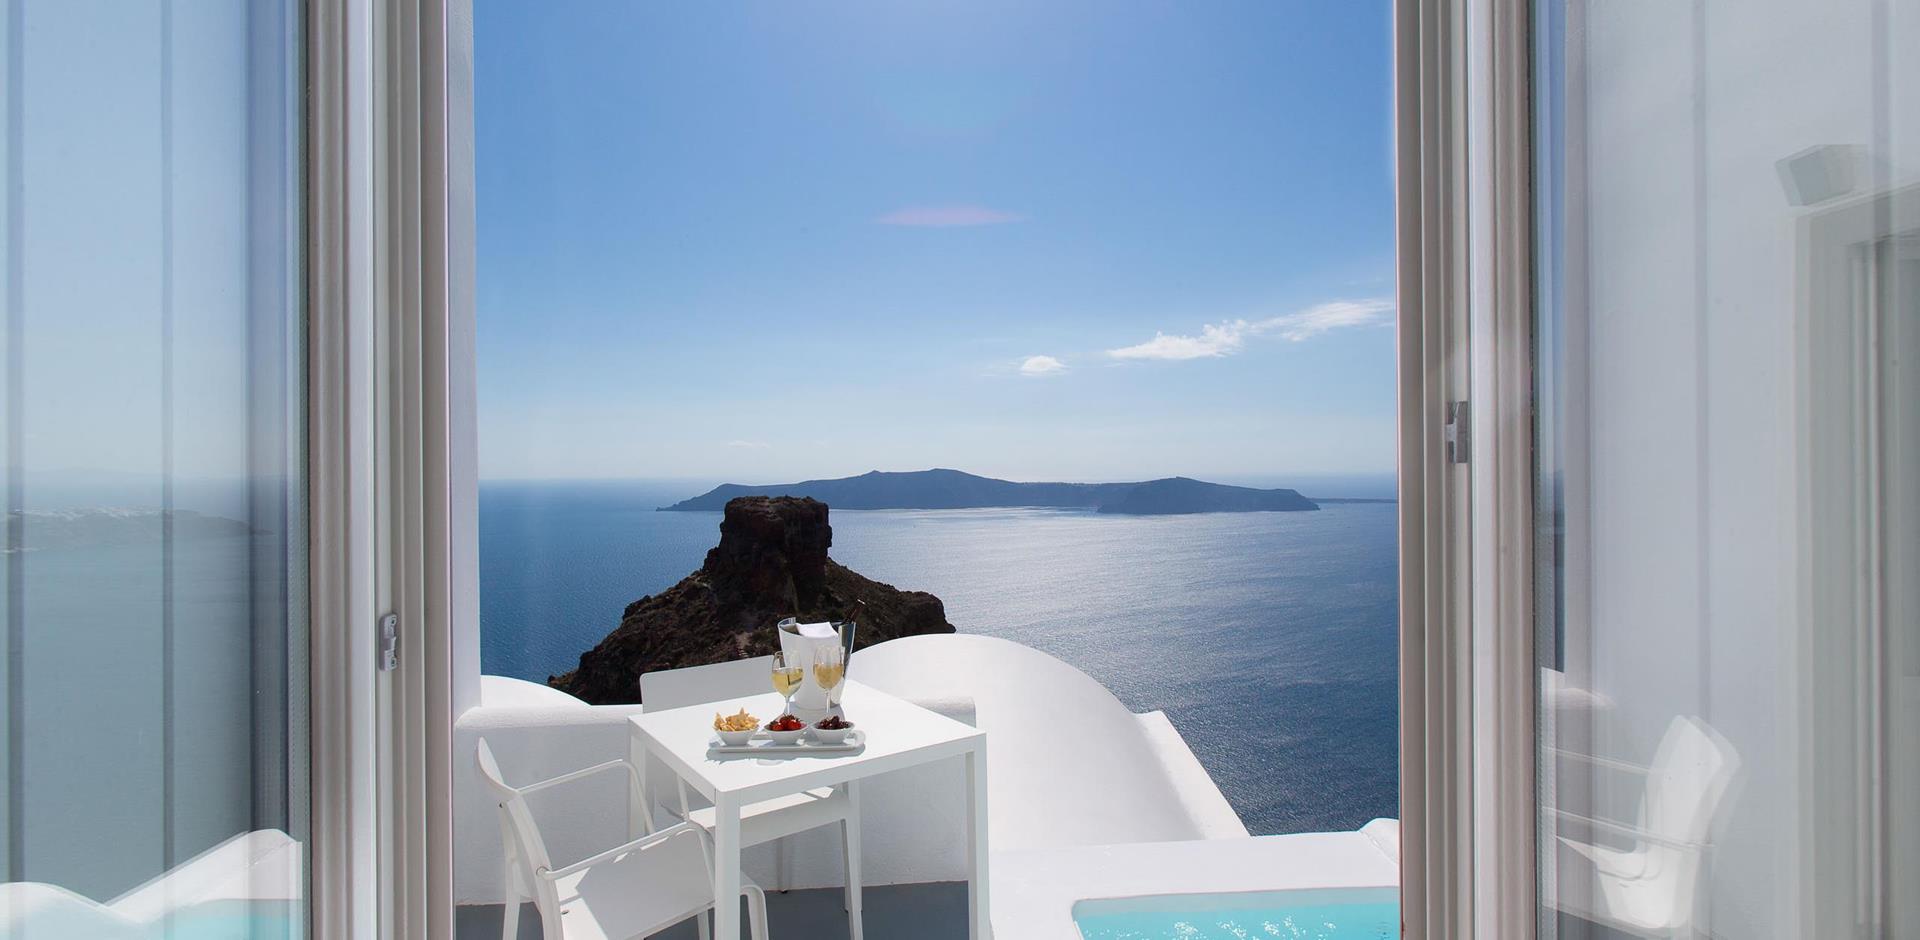 Grace Hotel Santorini, Accommodation, Greece, A&K